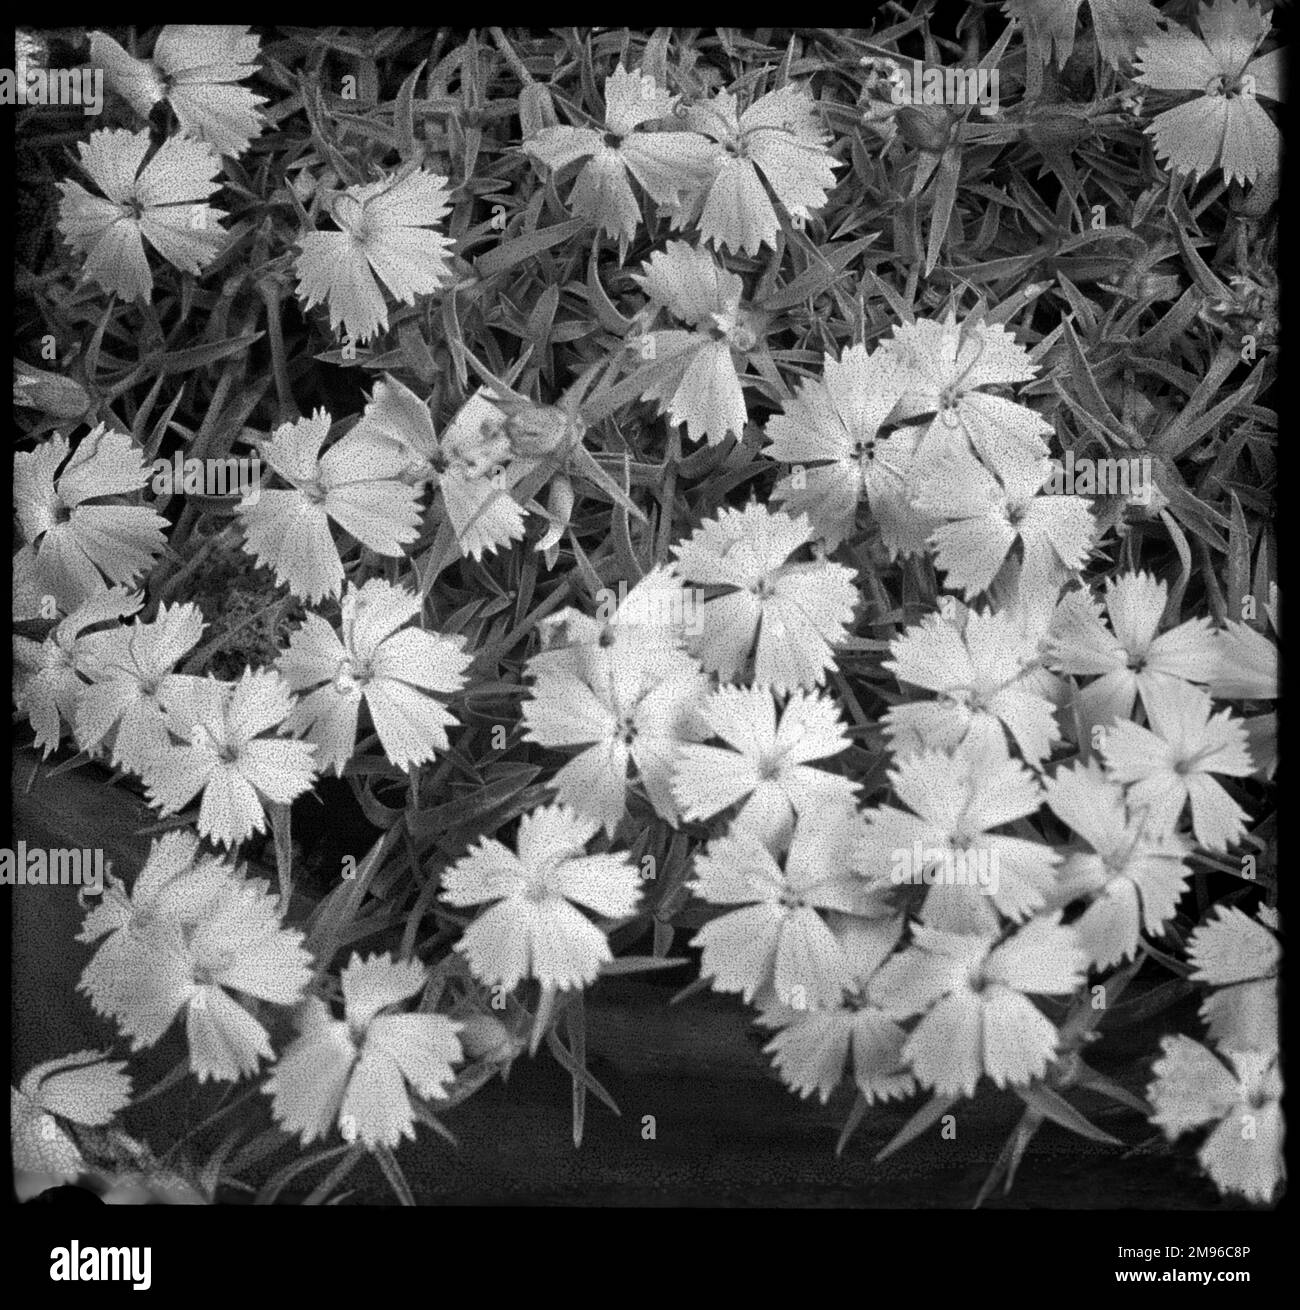 Une espèce Dianthus, la plus proche de Dianthus Alpinus (rose alpin), plante à fleurs vivaces de la famille des Caryophyllacées. Vu ici en gros plan. Banque D'Images